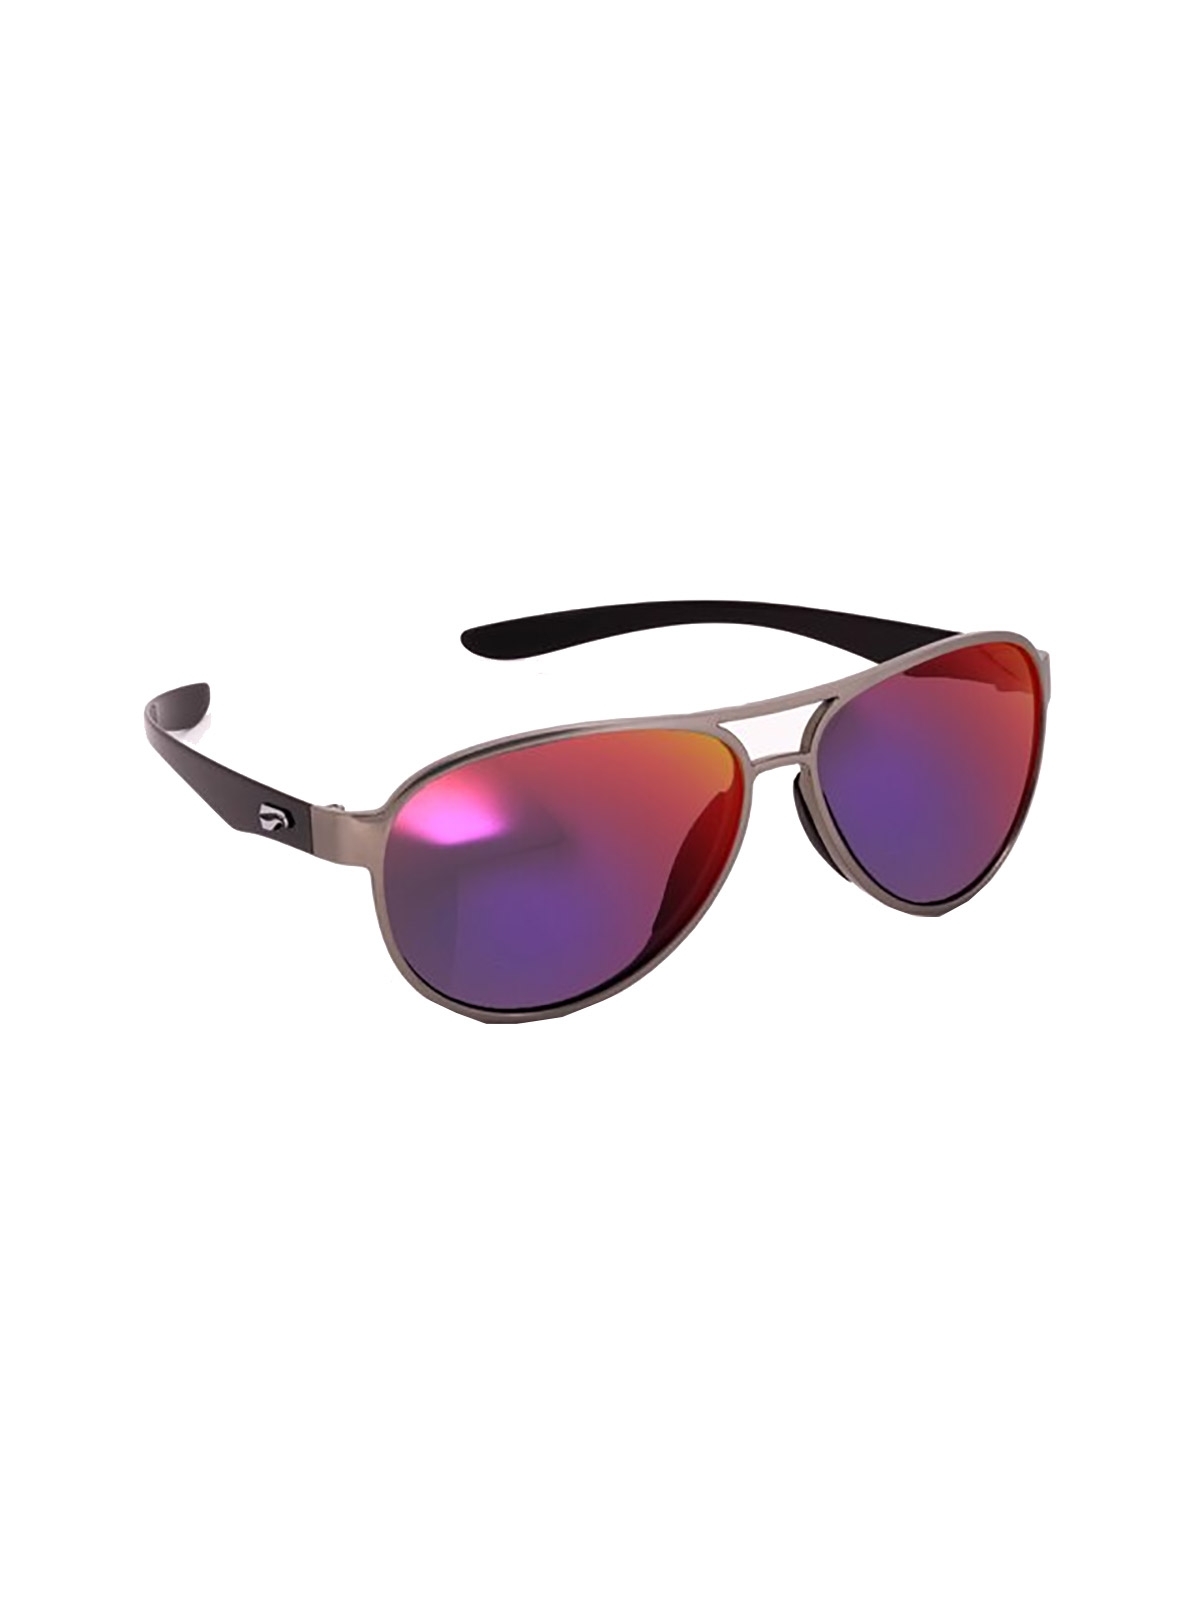 Flying Eyes Sunglasses Kestrel Aviator - Silver Front Frame, Mirrored Sunset Lenses